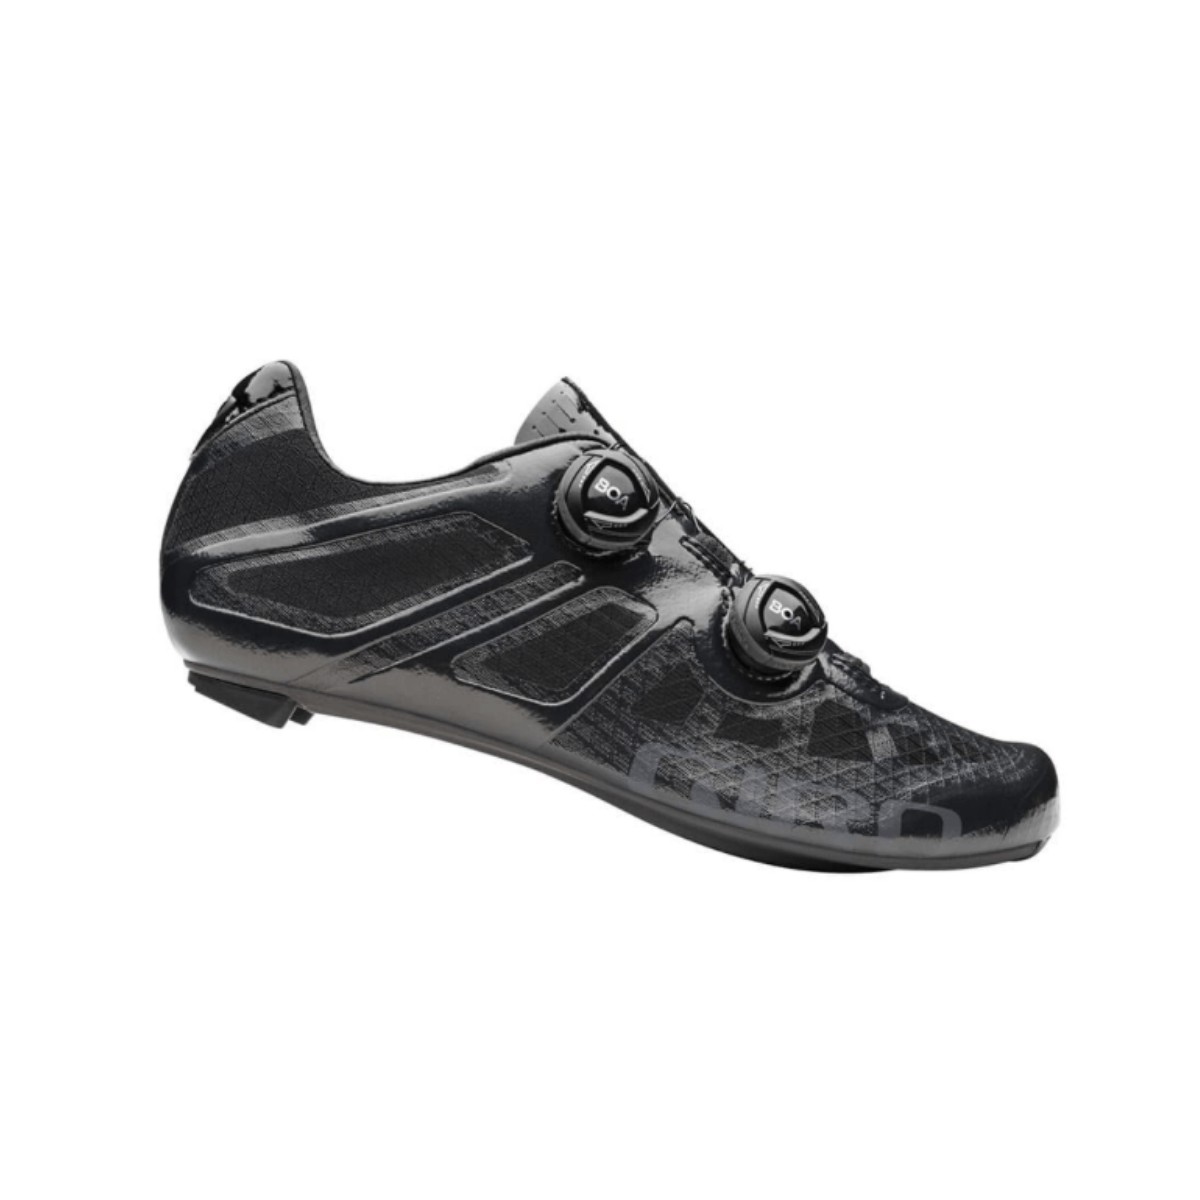 Giro Imperial Schuhe Schwarz, Größe 44 - EUR